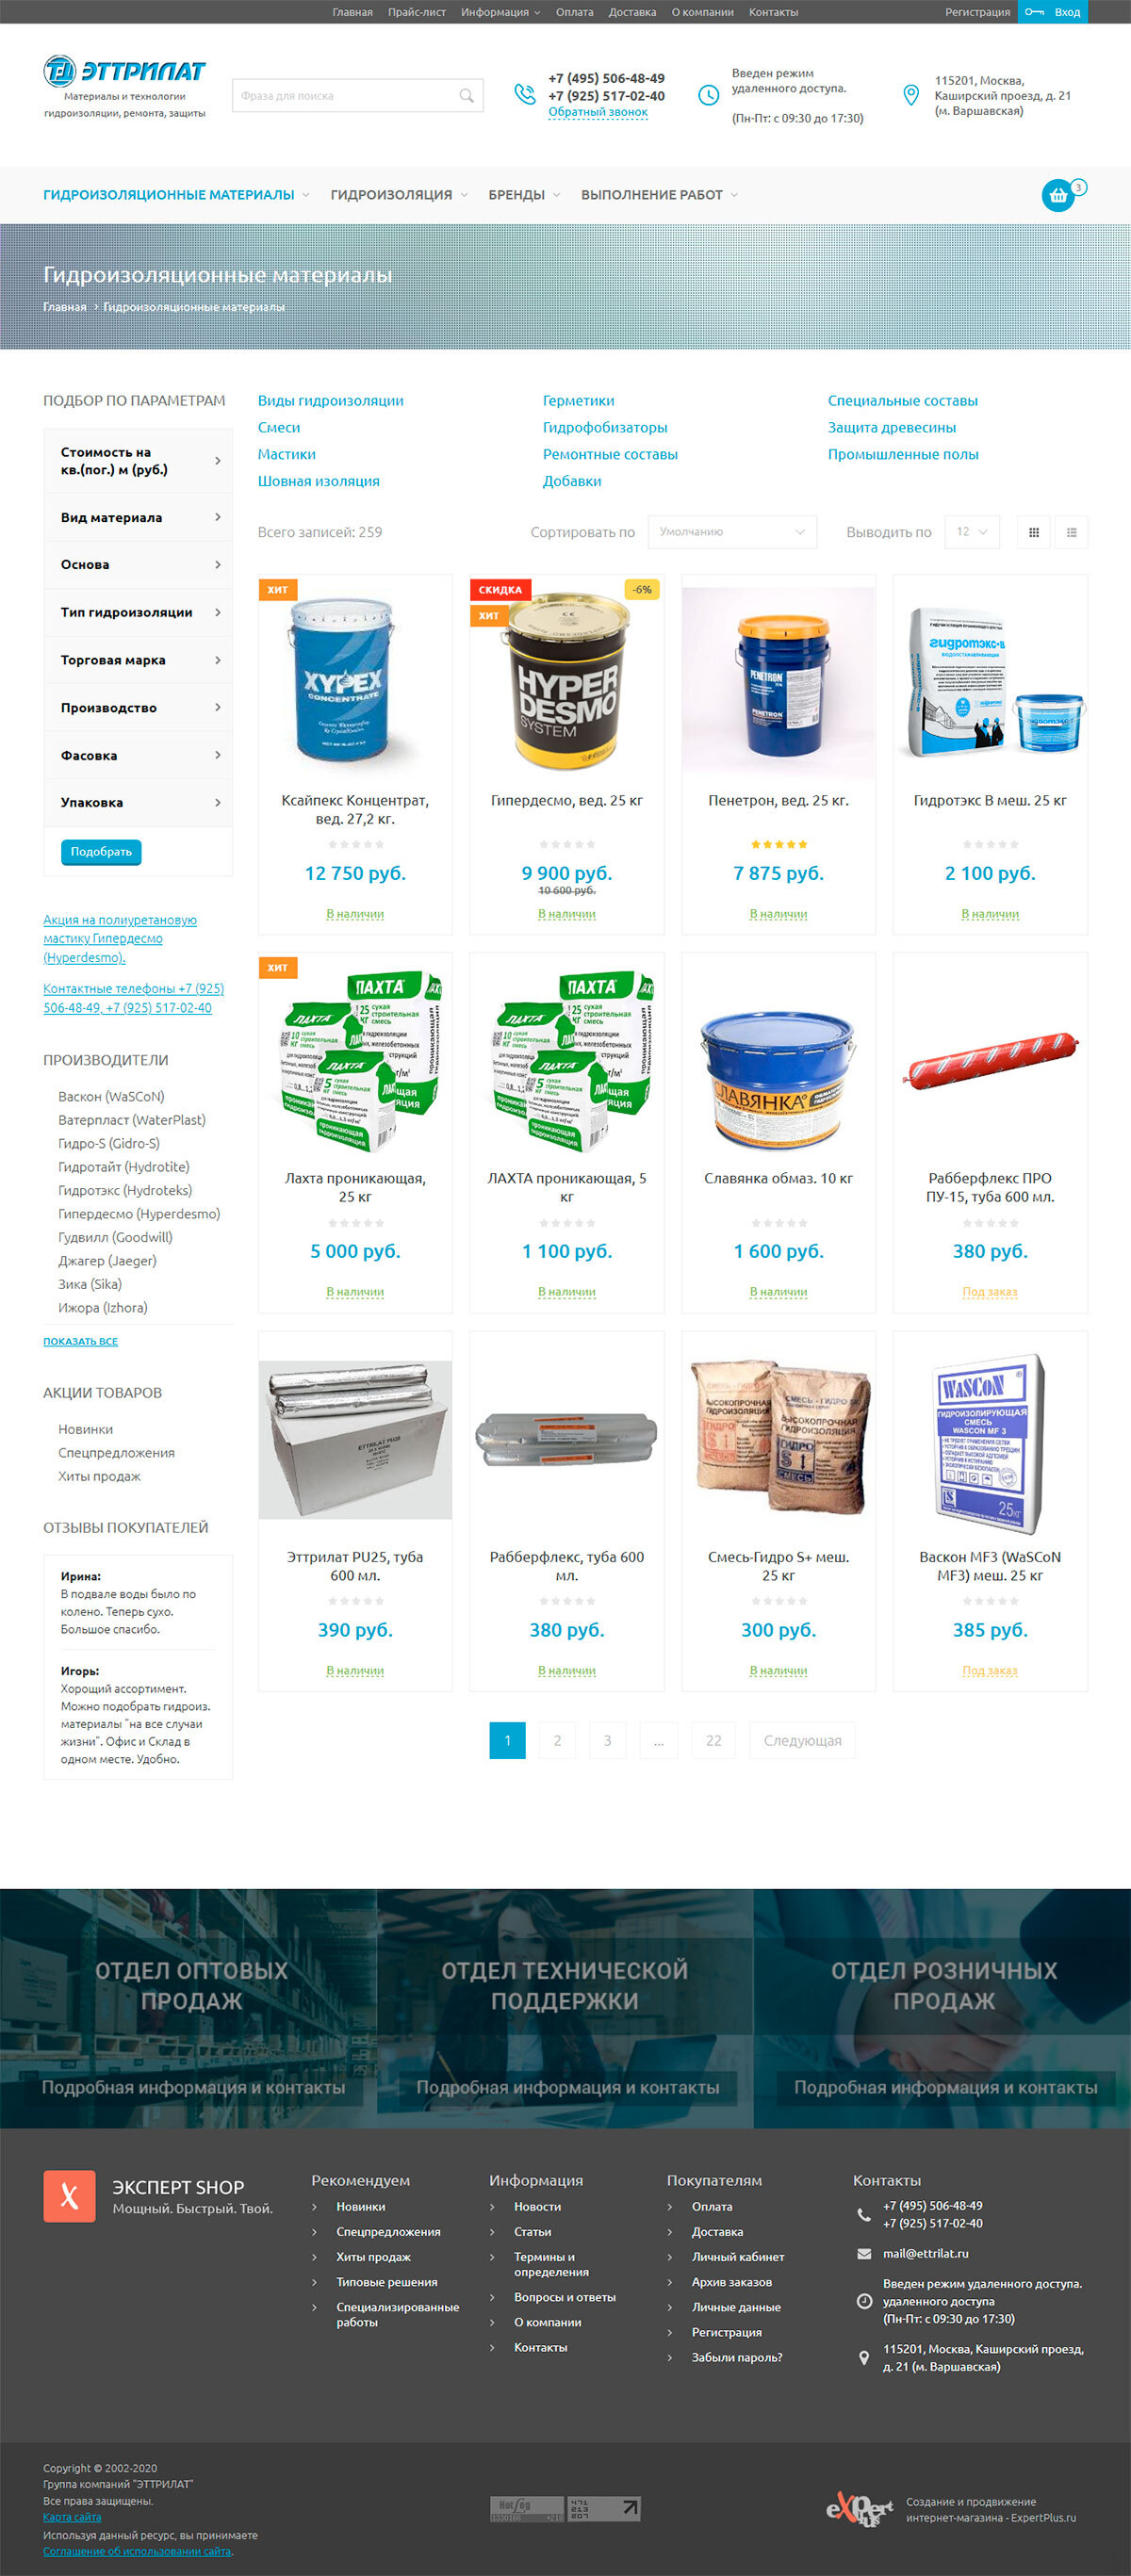 Интернет-магазин товаров и материалов для гидроизоляции "Эттрилат"